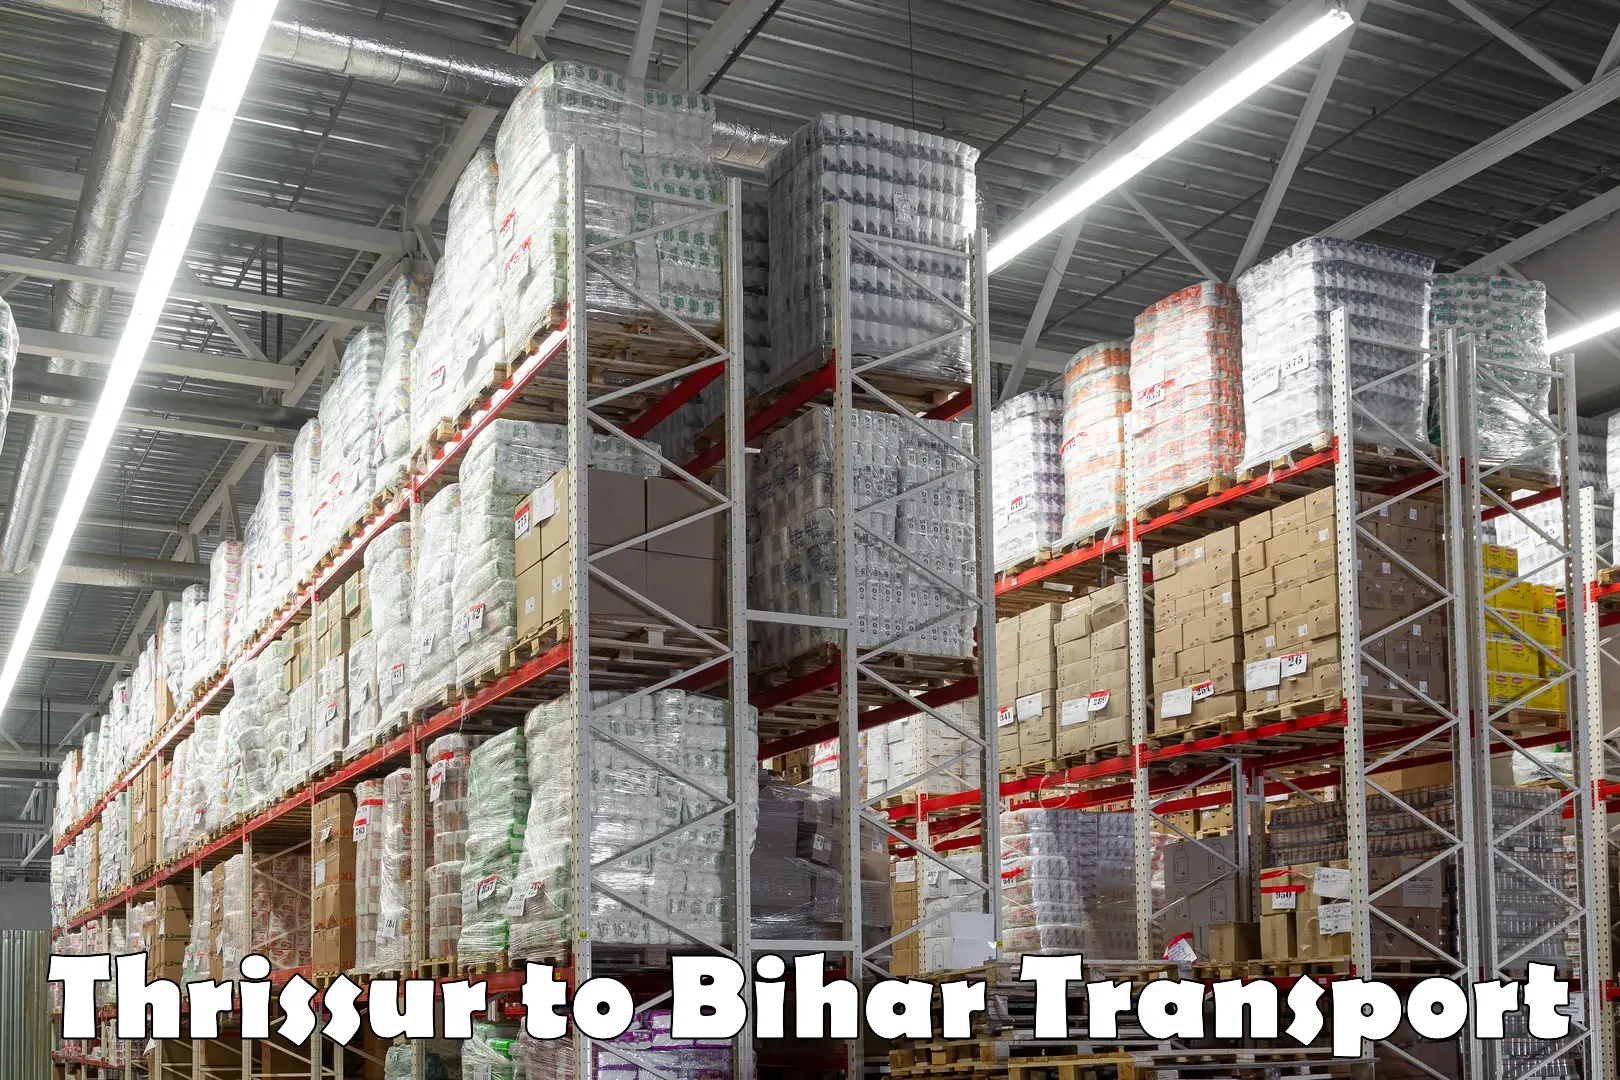 Furniture transport service Thrissur to Bihar